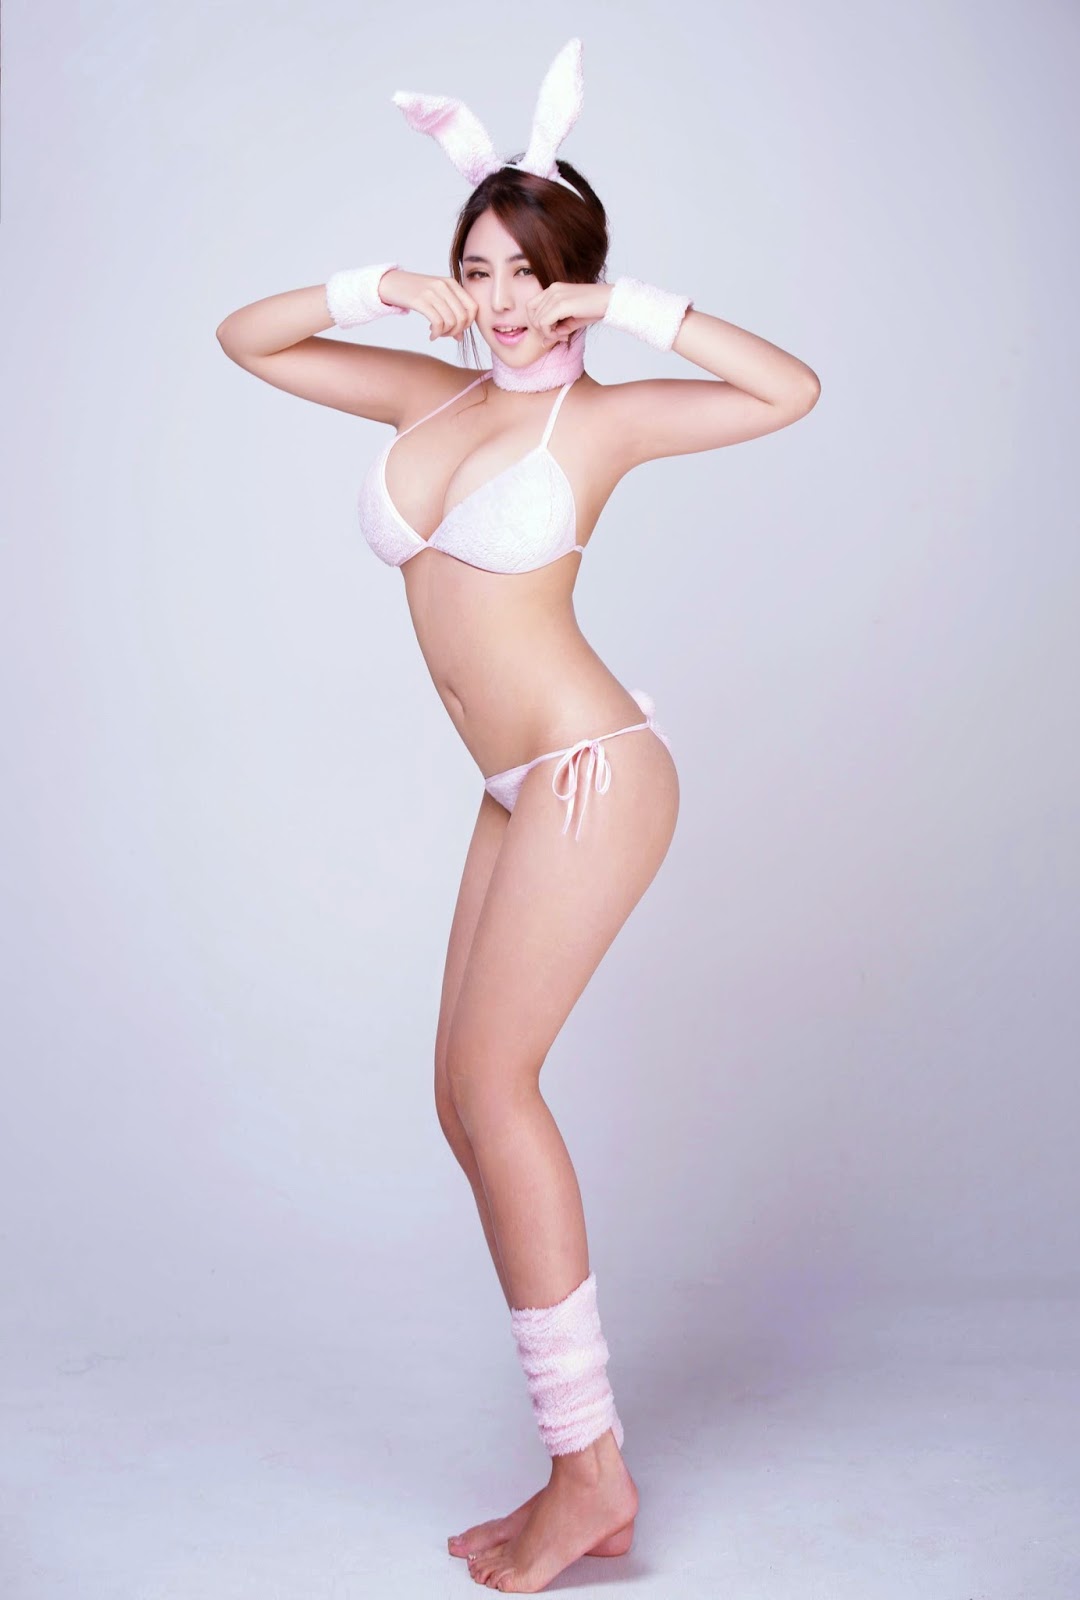 Chen Zi Rui Model Cantik dan Toge dari China | fromcloset